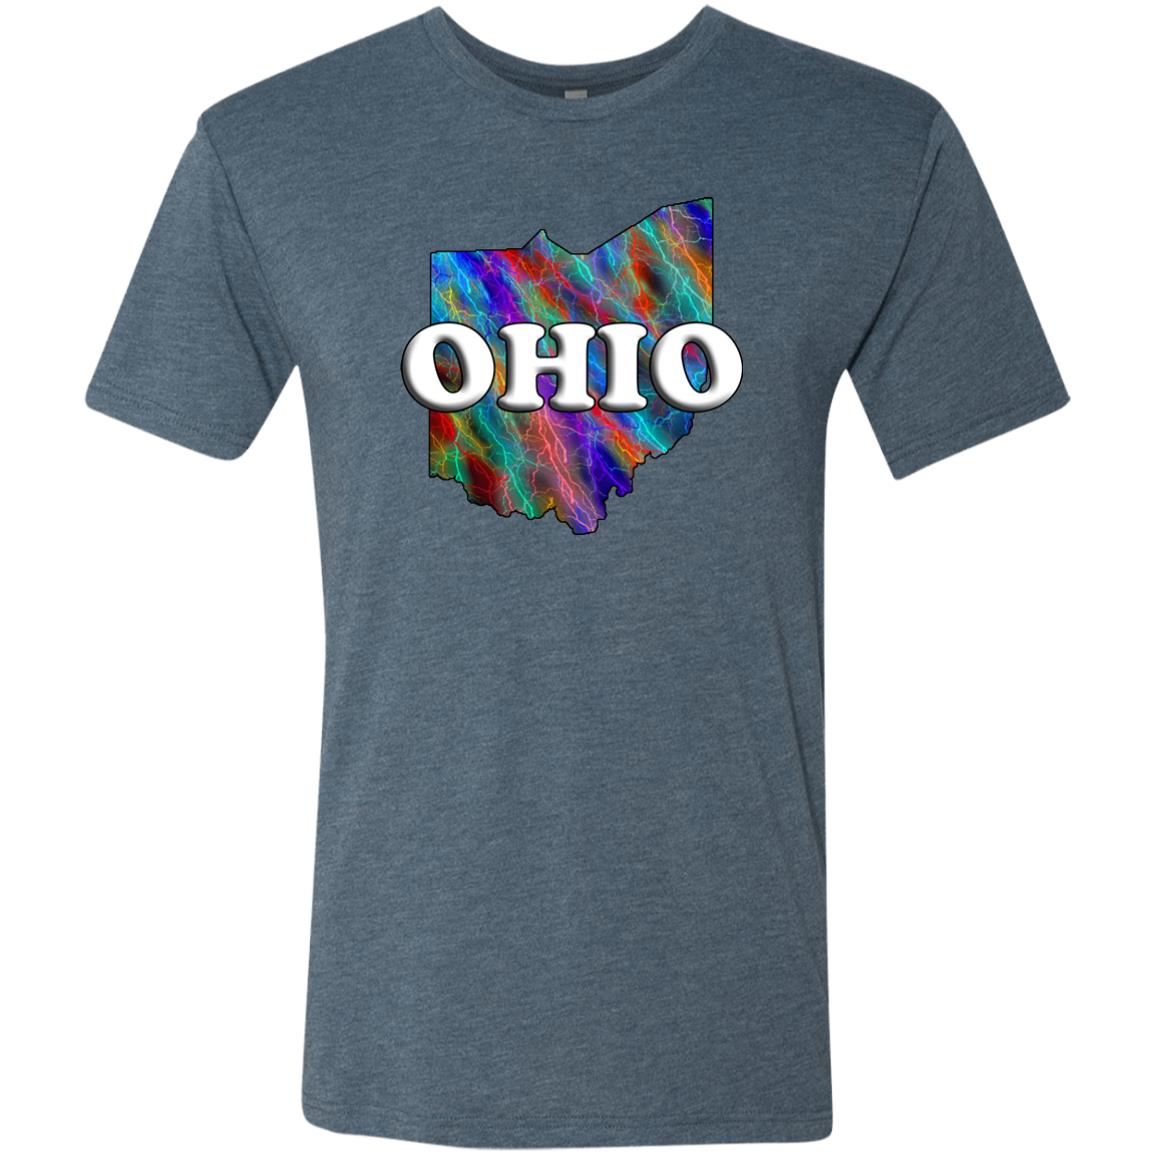 Ohio State T-Shirt